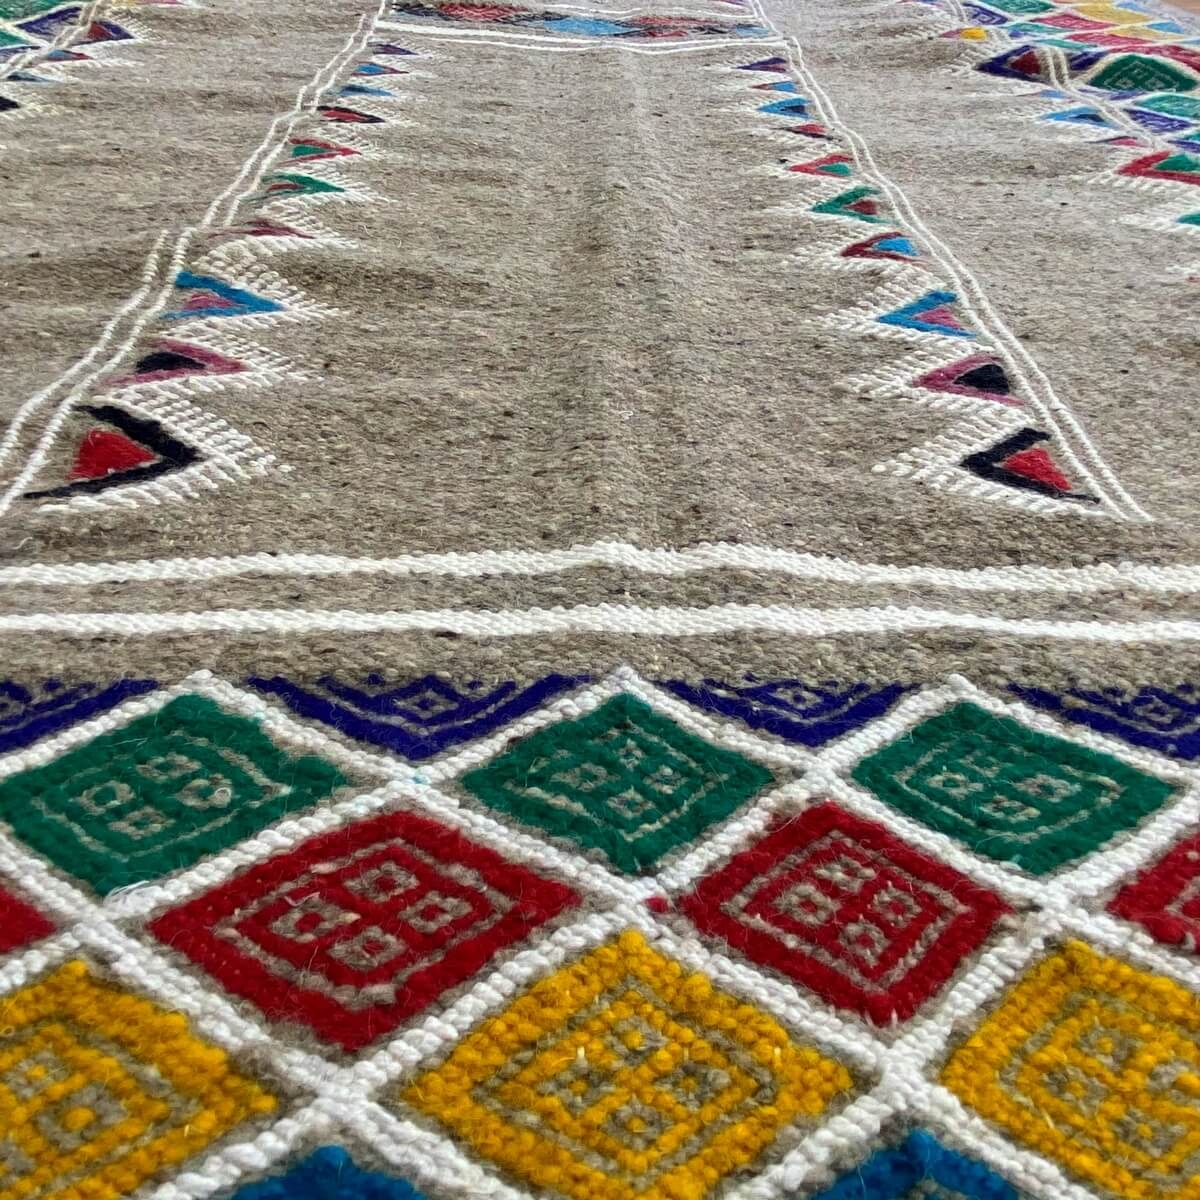 Berber Teppich Teppich Kelim Gayaya 132x250 Grau (Handgewebt, Wolle) Tunesischer Kelim-Teppich im marokkanischen Stil. Rechtecki